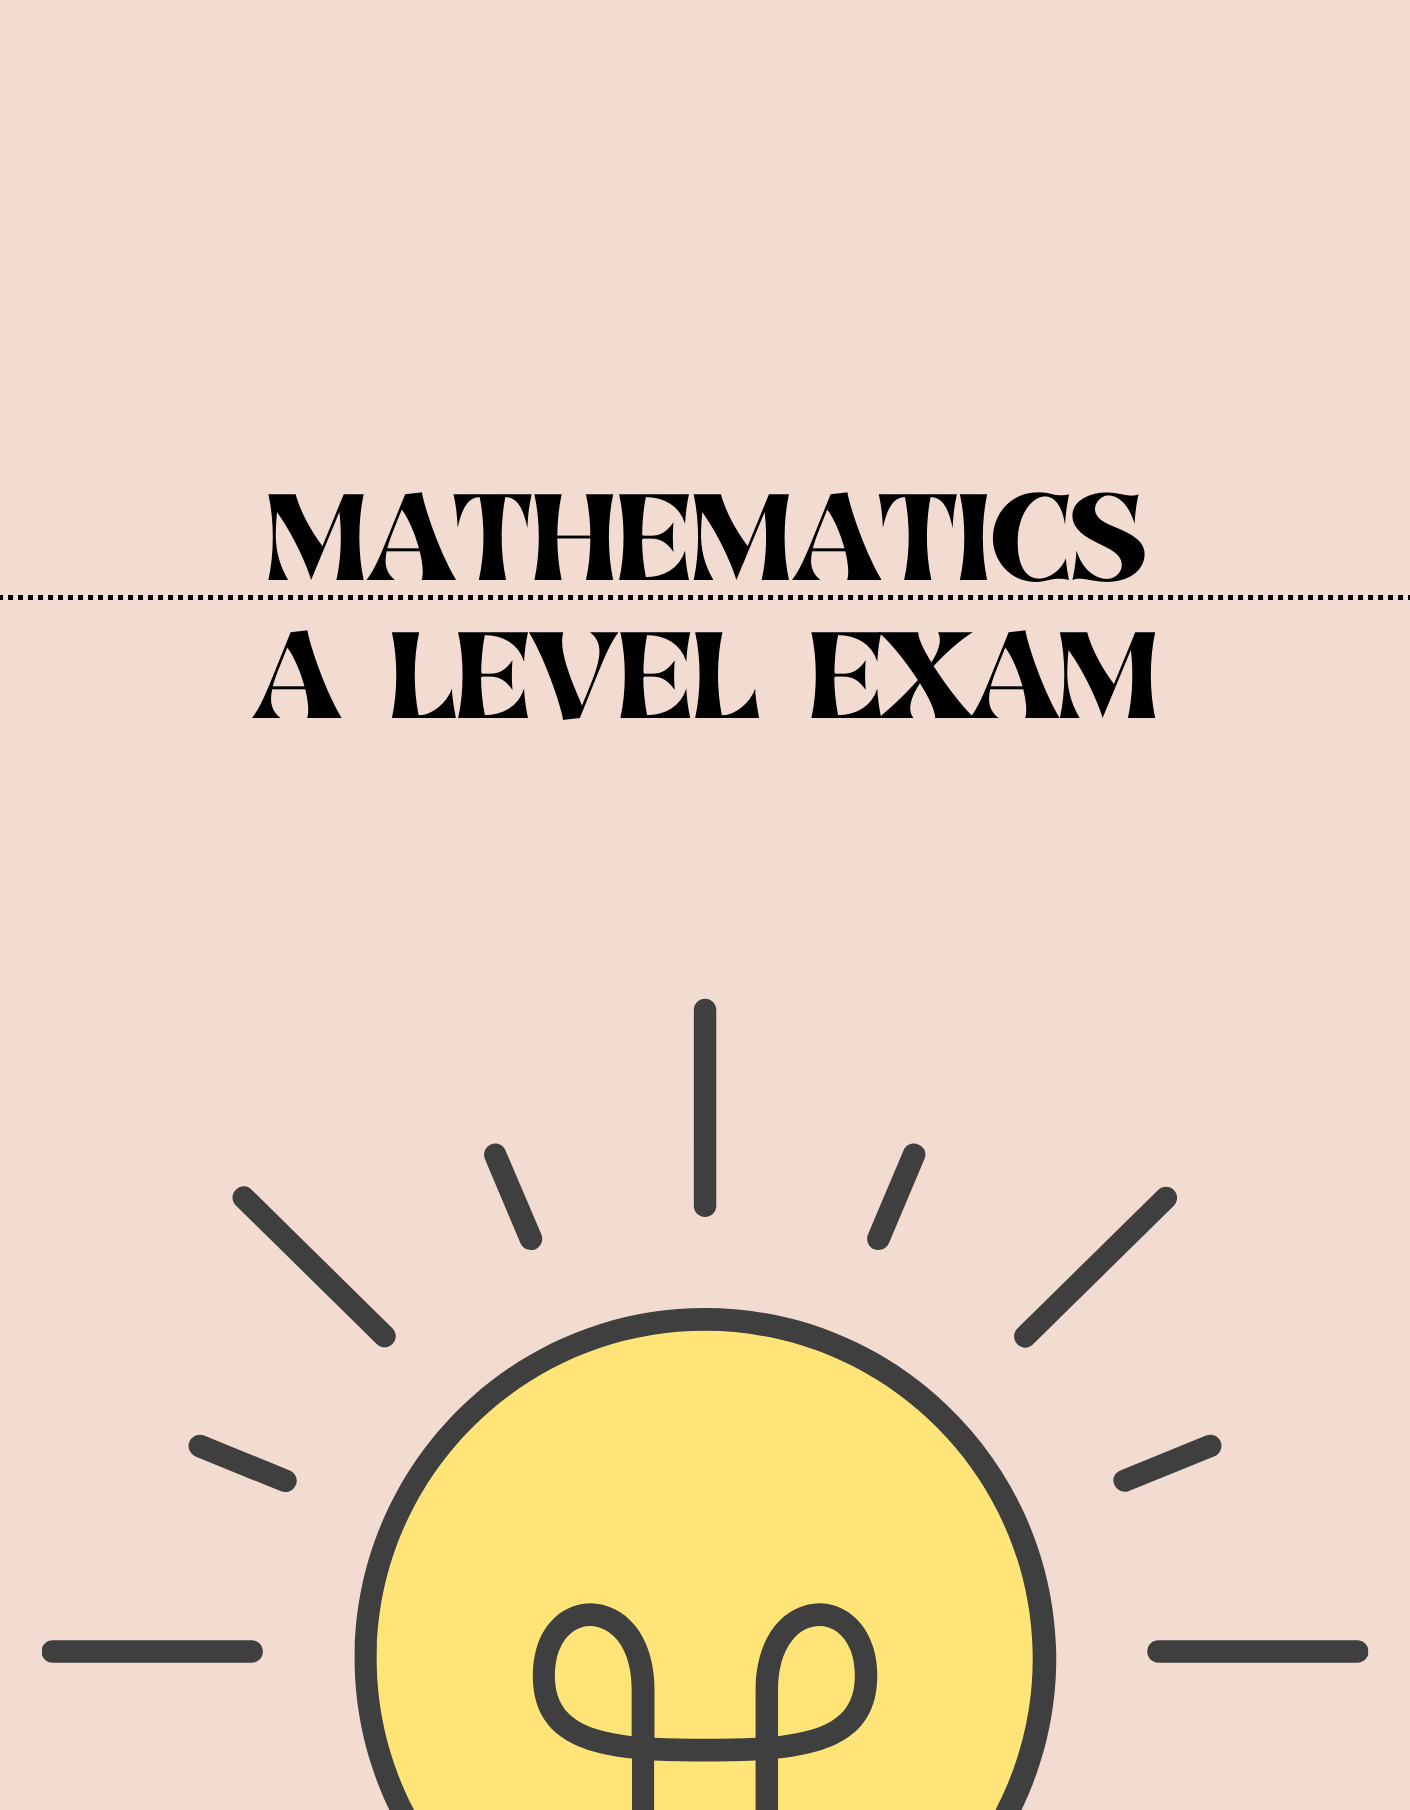 A Level - Mathematics Exam - Exam Centre Birmingham Limited